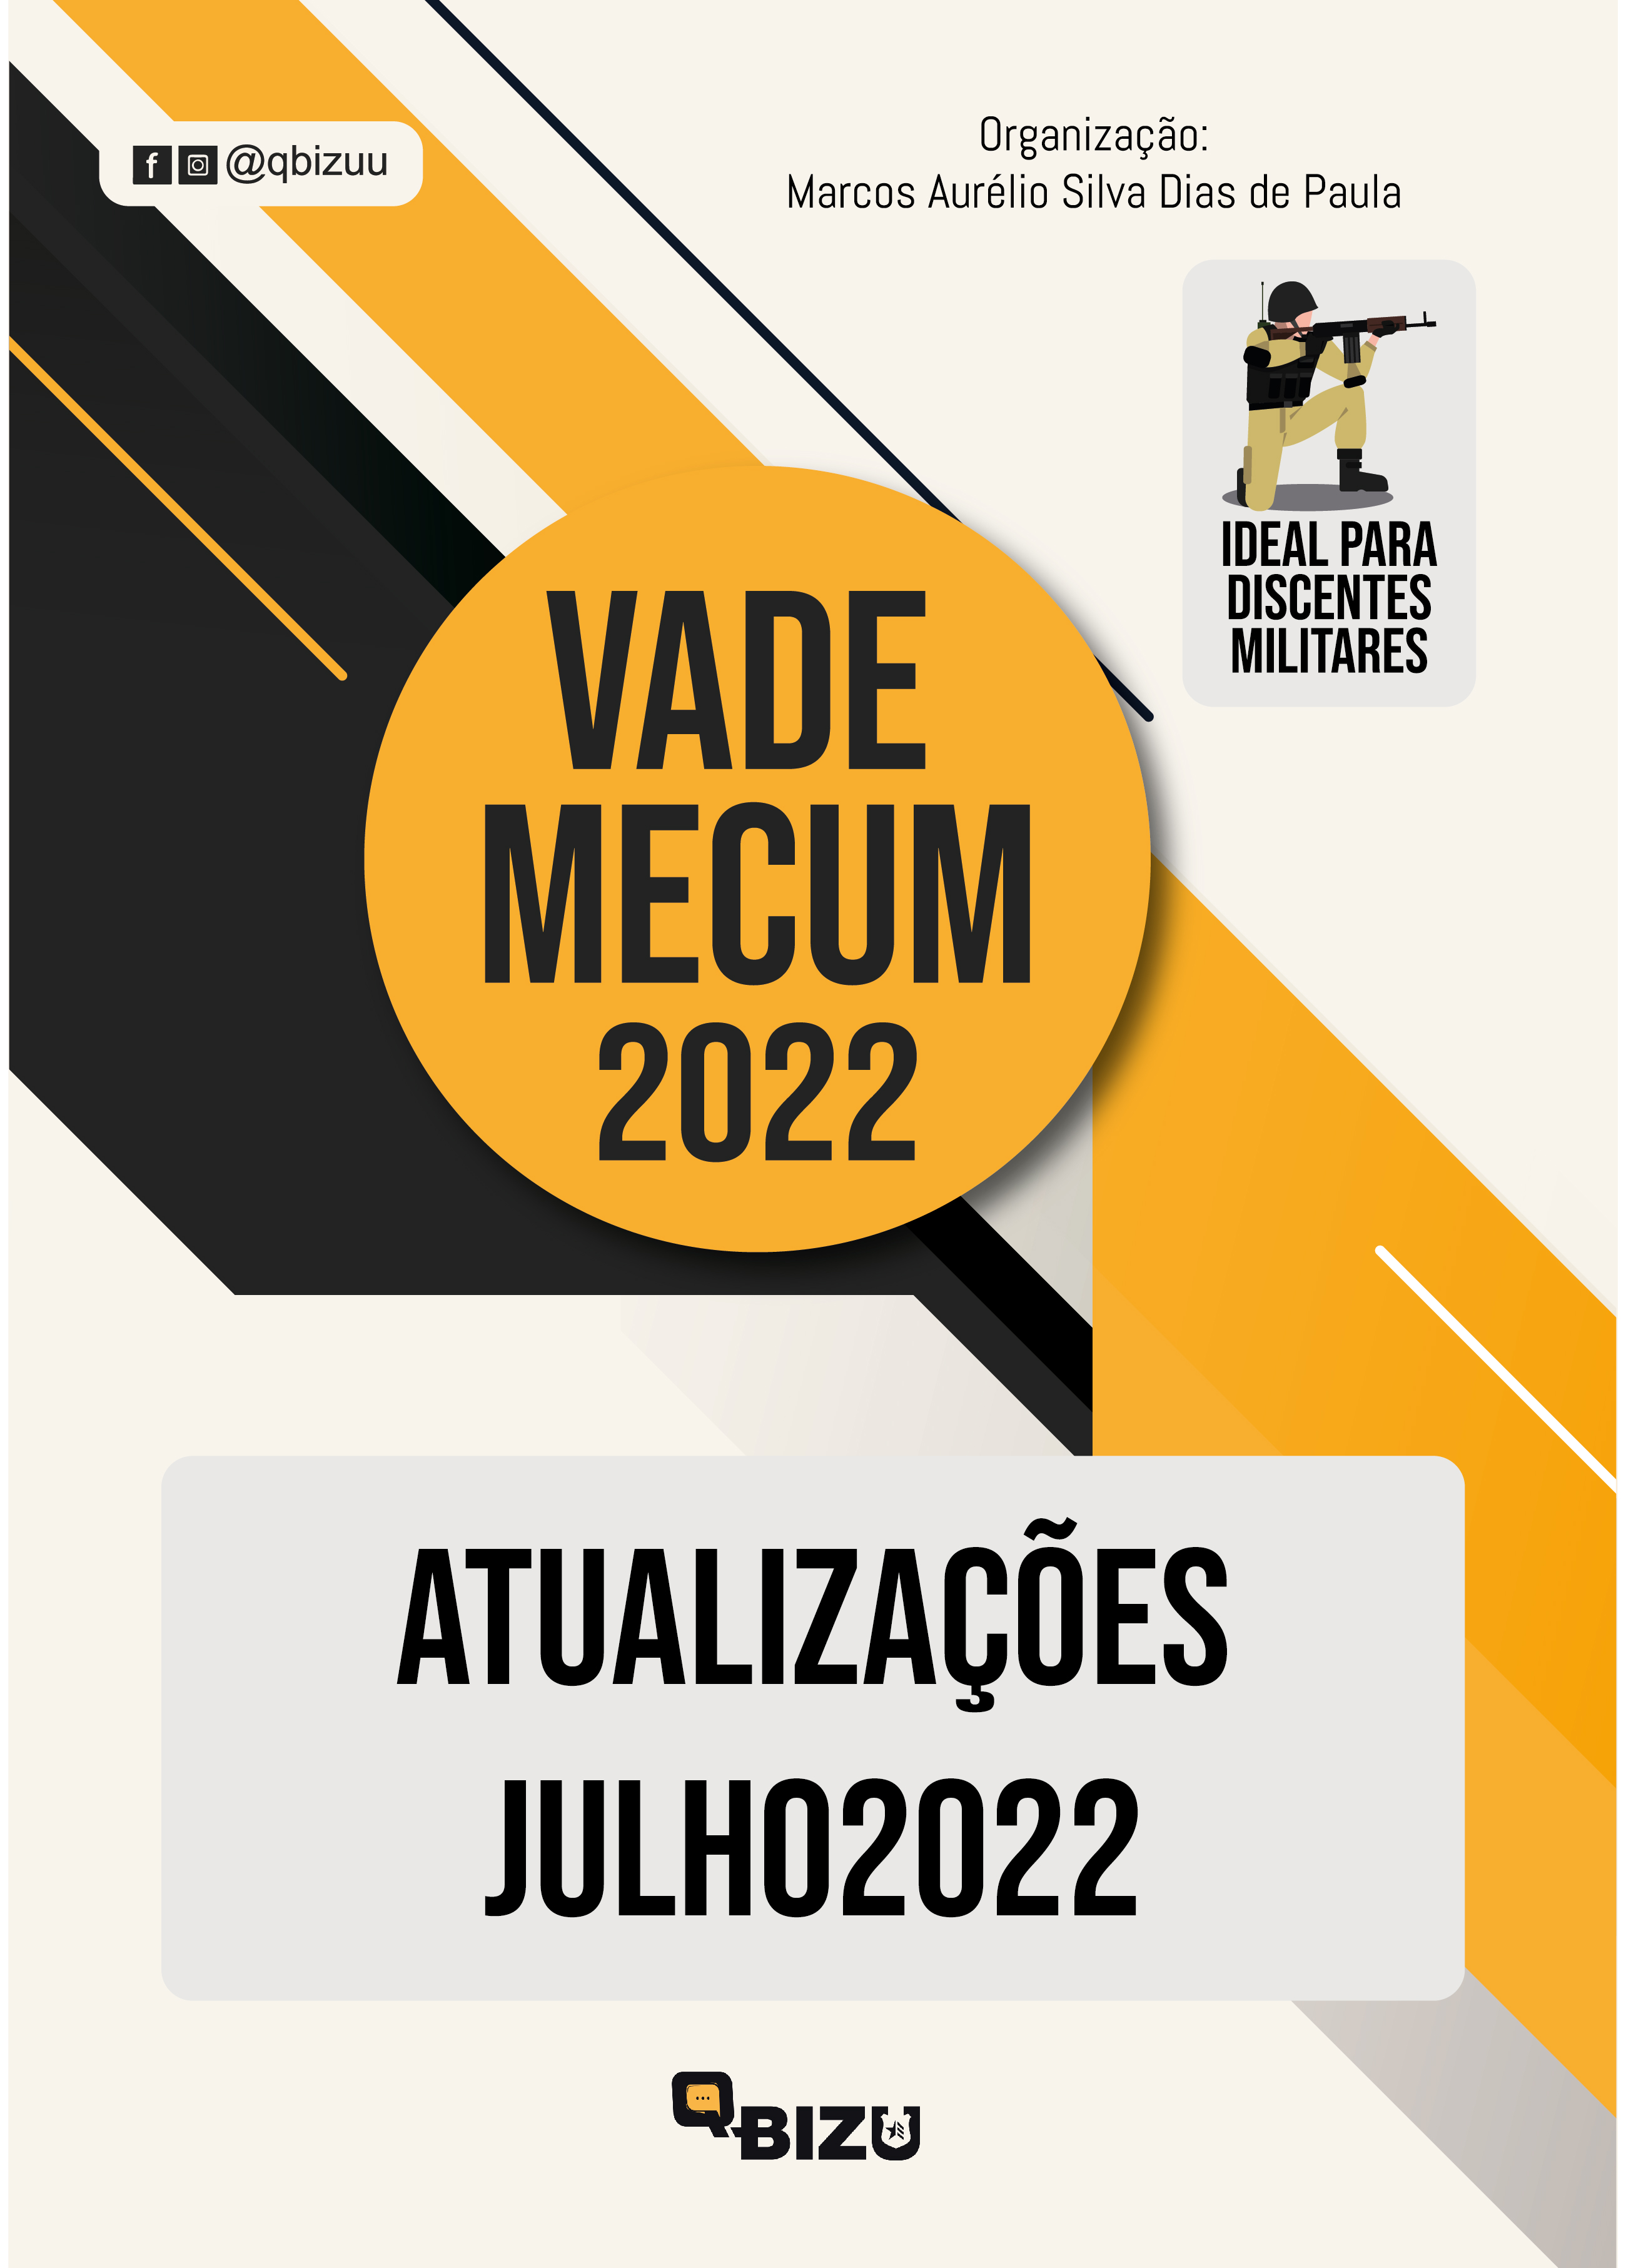 Livro Digital Vade Mecum Policial de Atualização Vade Mecum QBIZU 2022